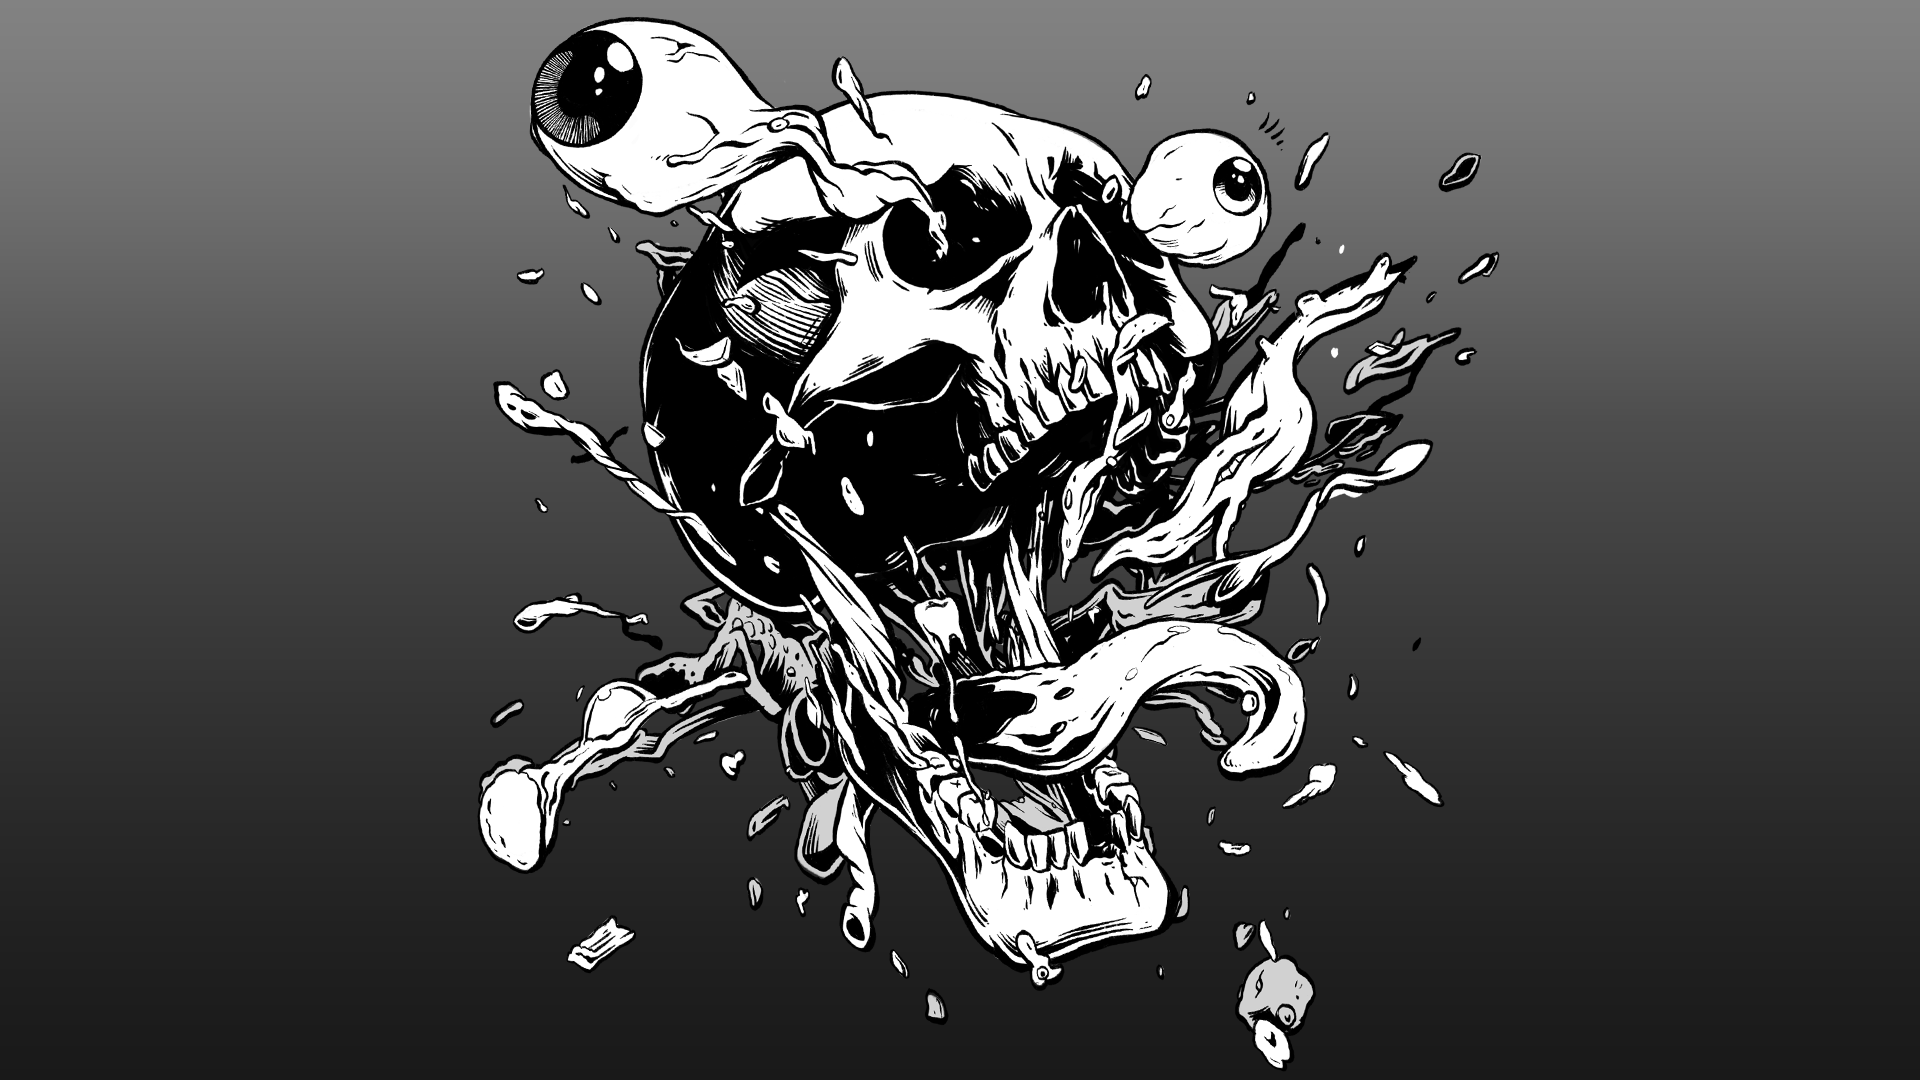 Skull 1 BG.png